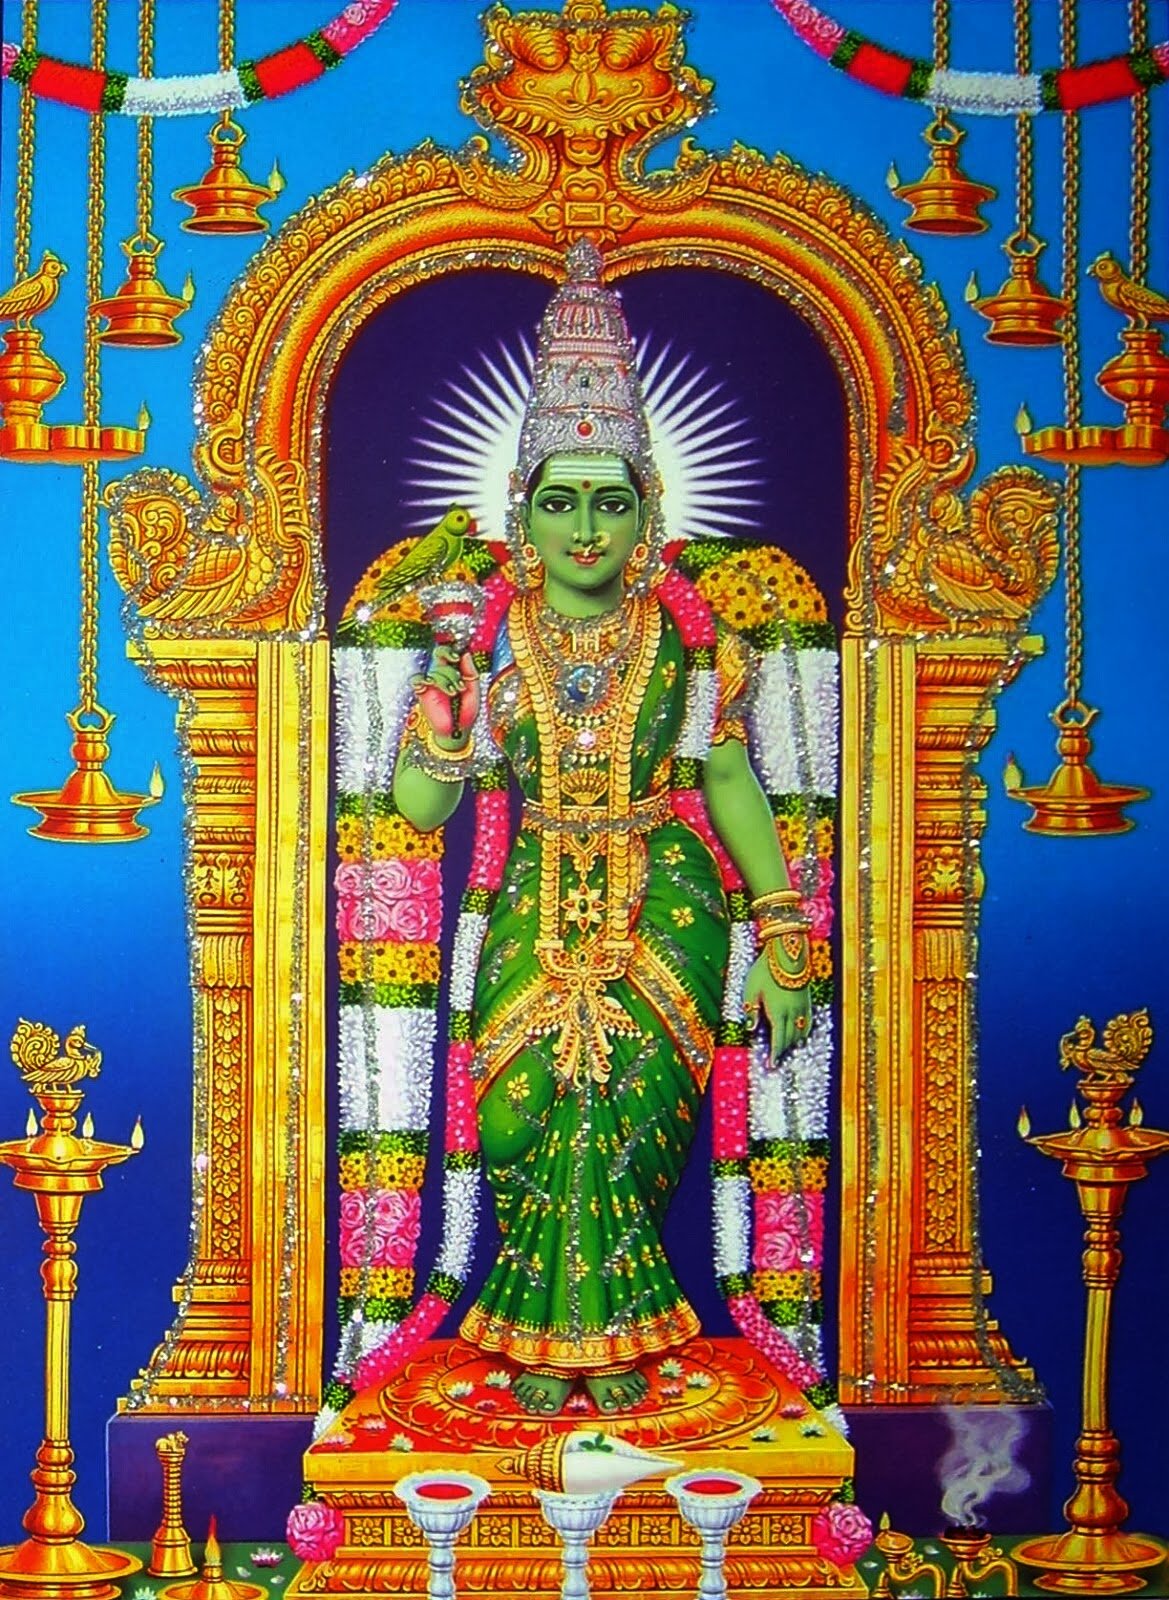 Goddess Madurai Meenakshi Amman Images & Wallpapers - DivineInfoGuru.com